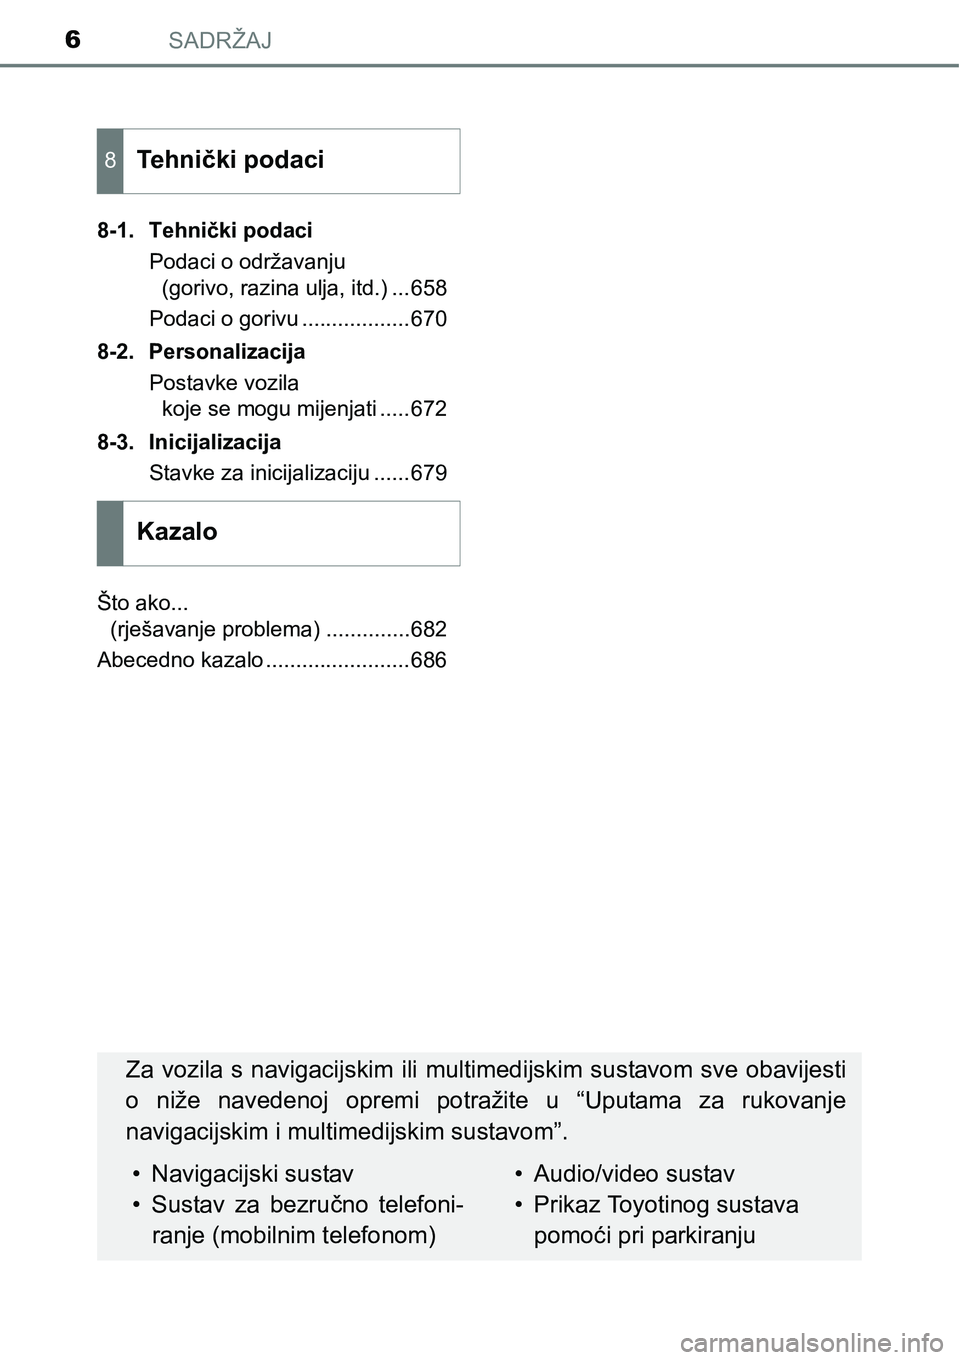 TOYOTA PRIUS 2017  Upute Za Rukovanje (in Croatian) SADRŽAJ6
8-1. Tehnički podaci
Podaci o održavanju 
(gorivo, razina ulja, itd.) ...658
Podaci o gorivu ..................670
8-2. Personalizacija
Postavke vozila 
koje se mogu mijenjati .....672
8-3